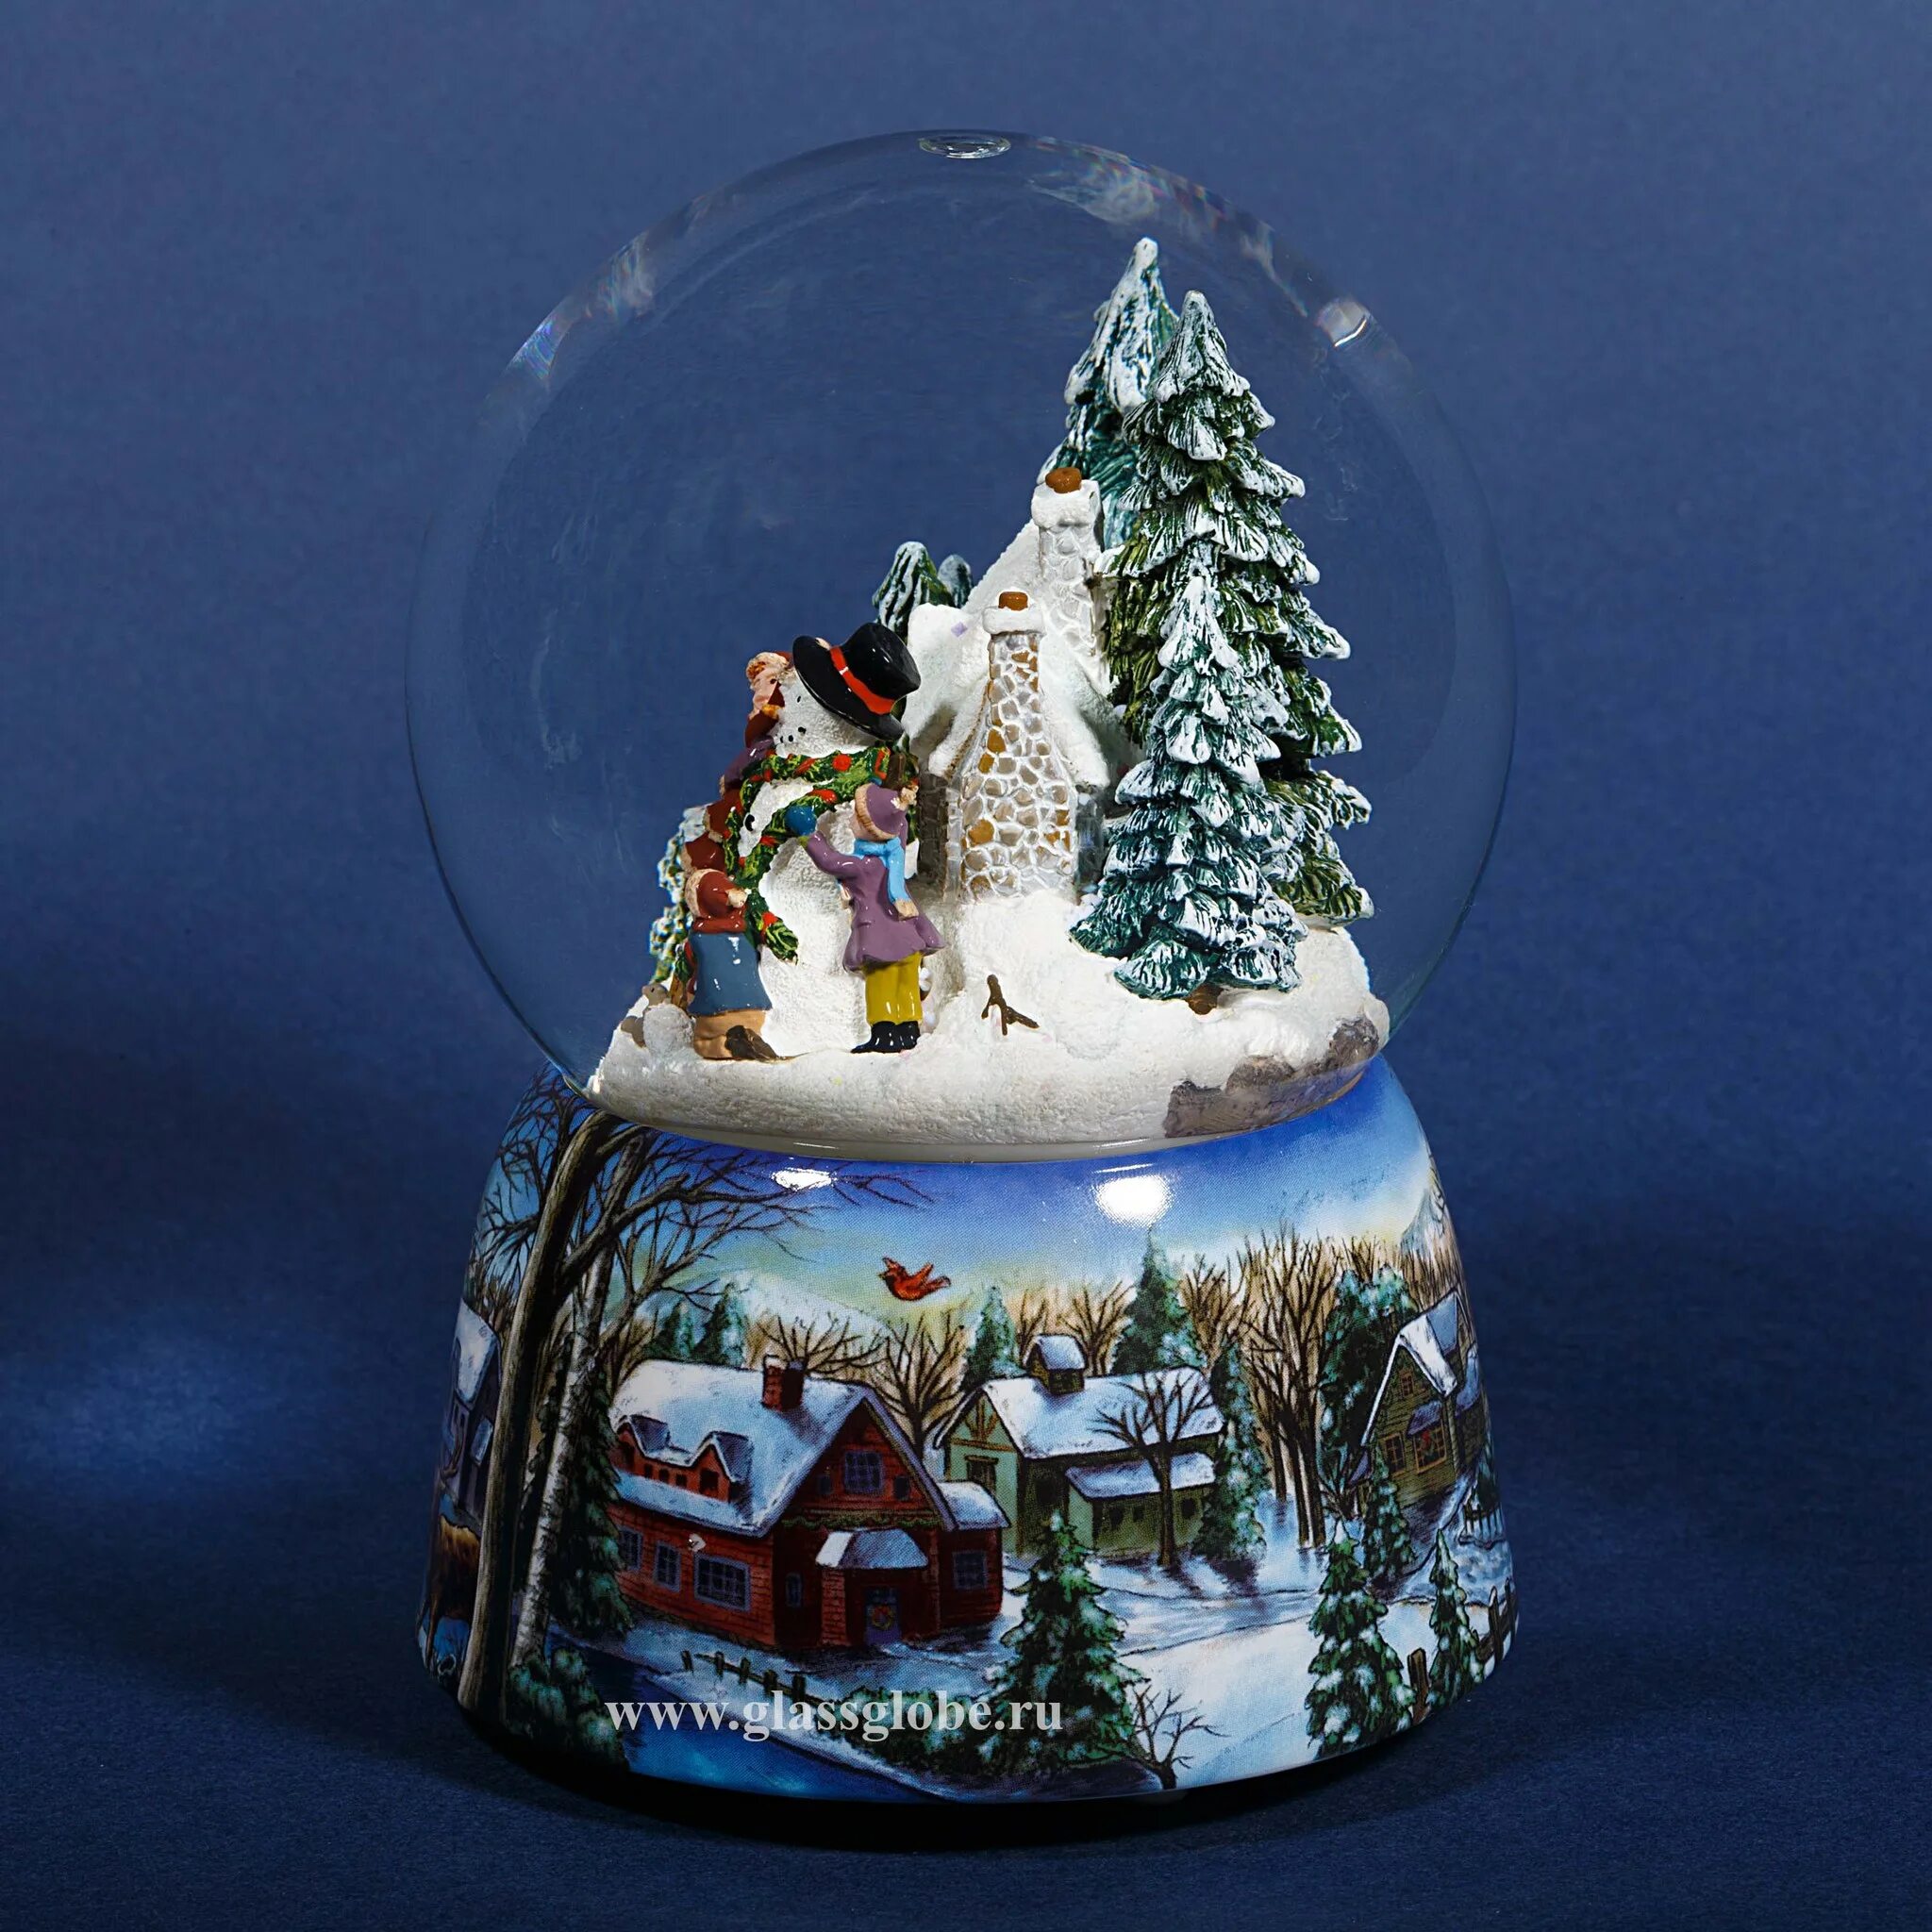 Снег снежном шаре. Снежный шар. Шар со снегом. Зимний шар. Новогодняя игрушка шар со снегом.